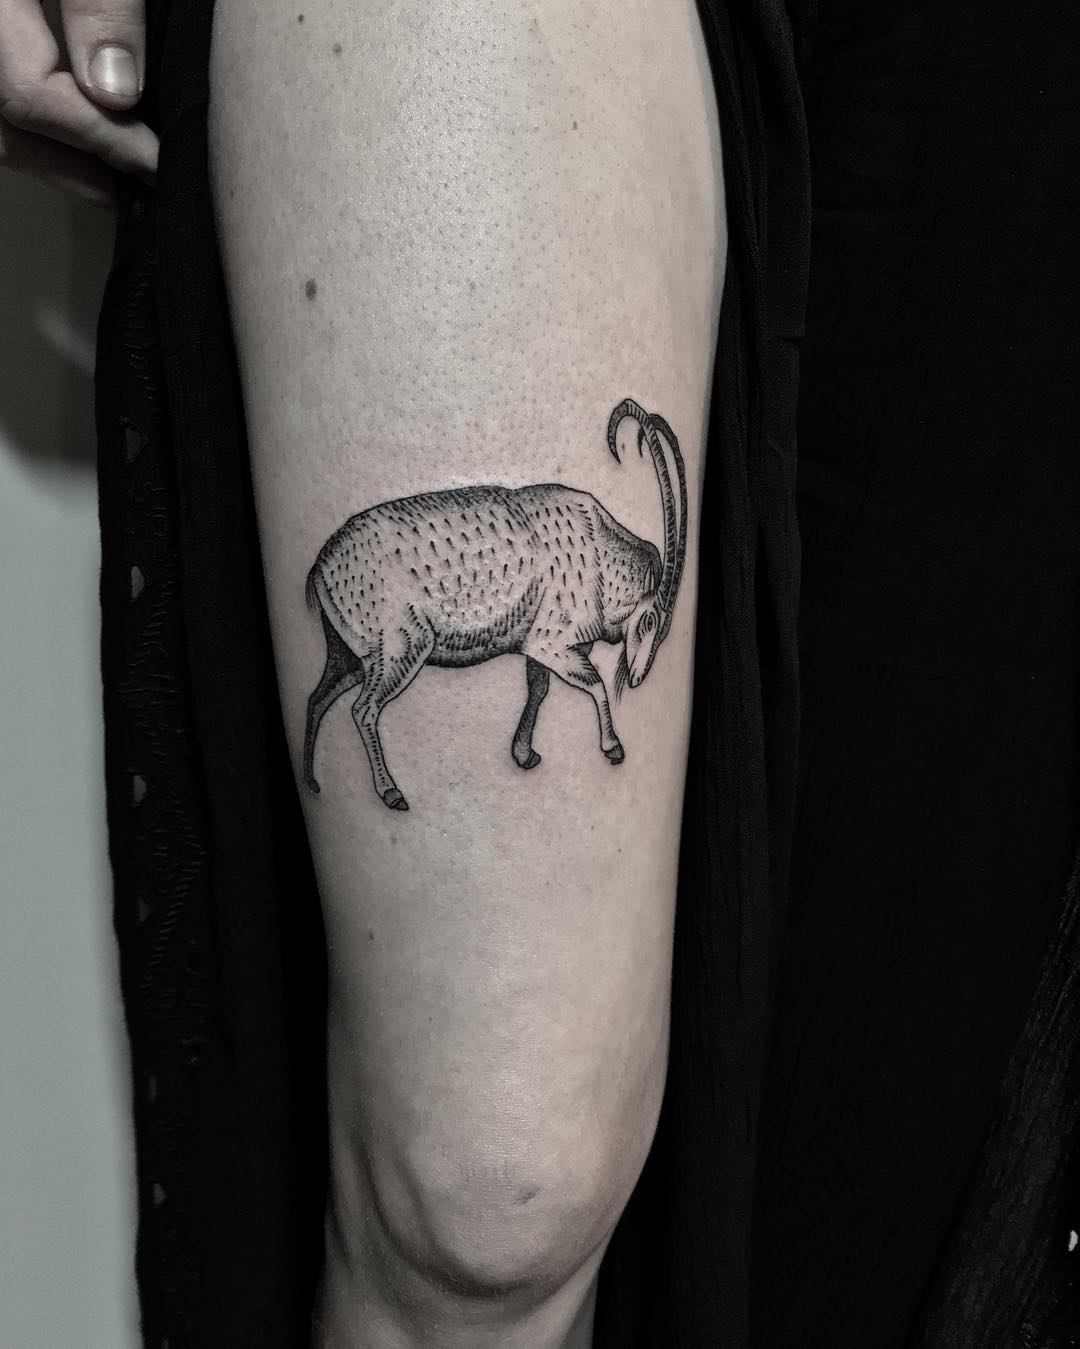 Ibex tattoo by @justinoliviertattoo